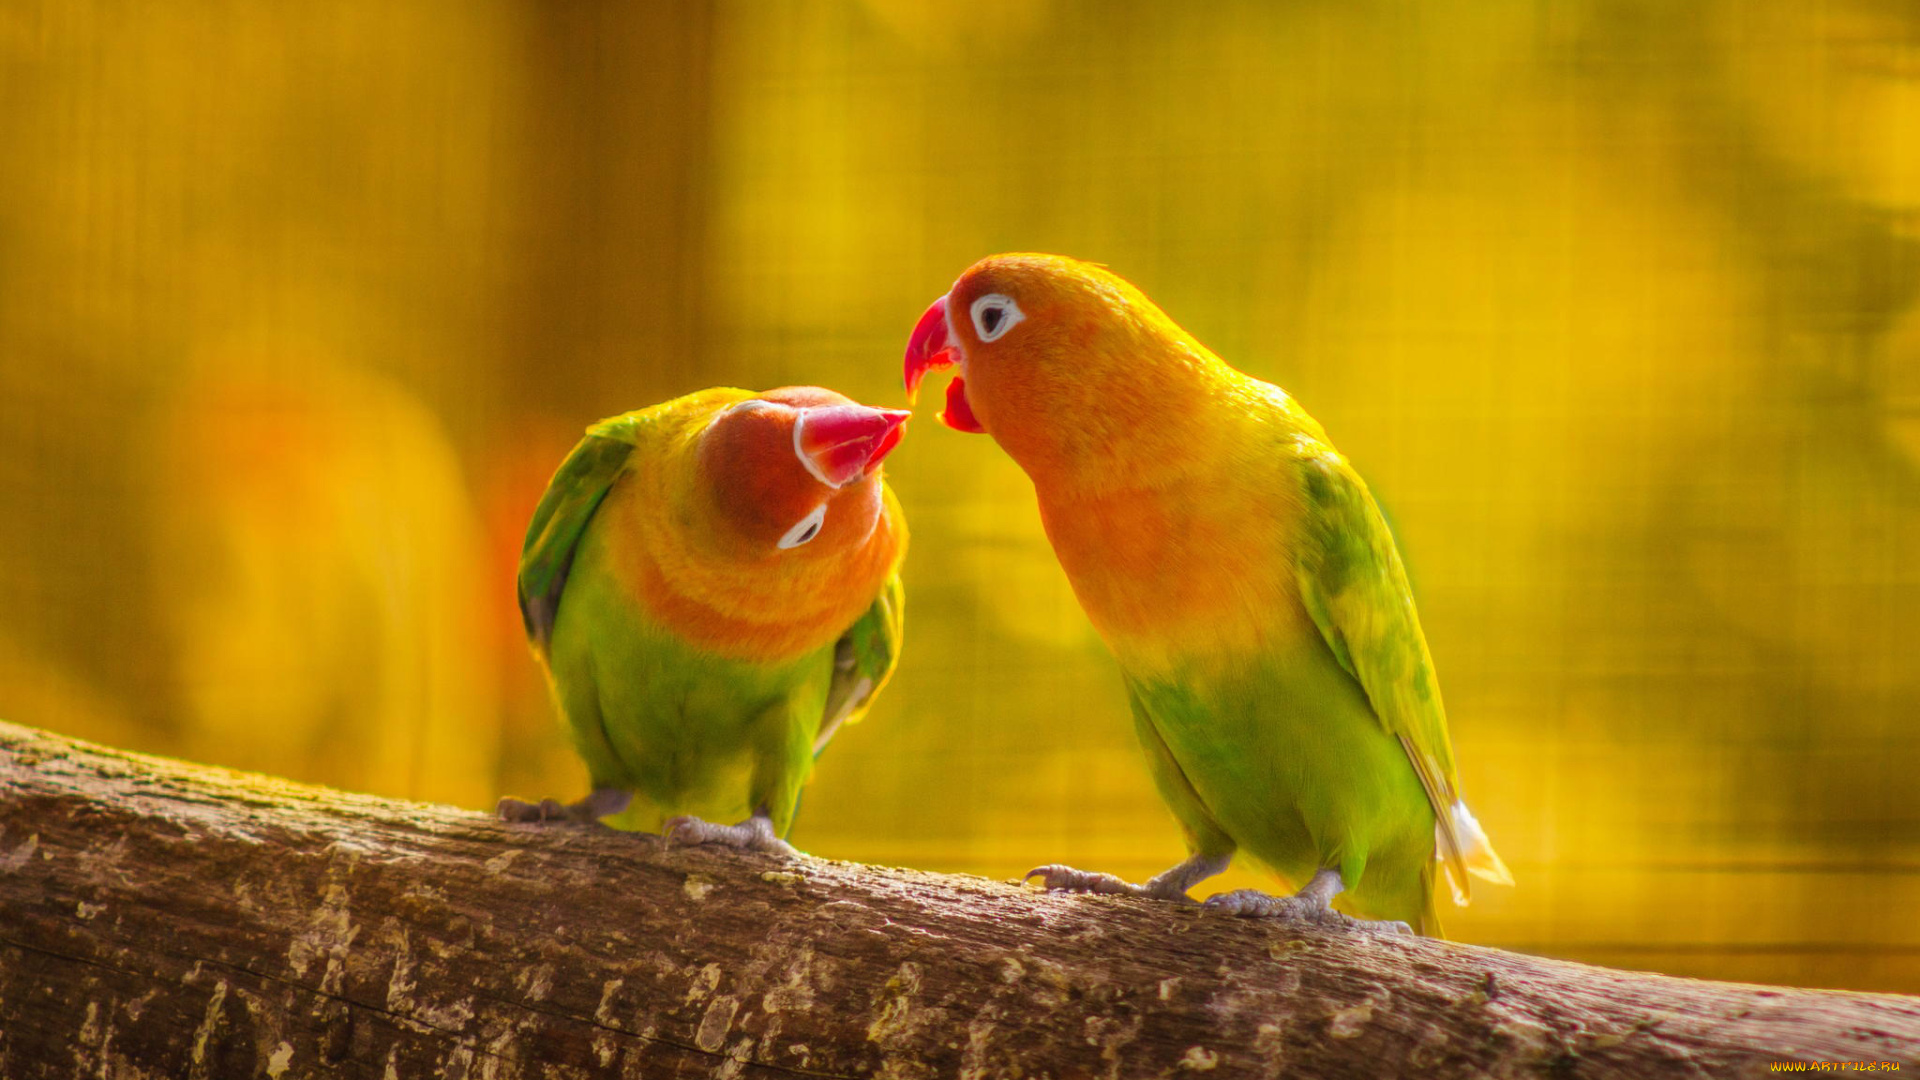 животные, попугаи, ветка, пара, попугай, поцелуй, птица, любовь, перья, хвост, клюв, листья, природа, лес